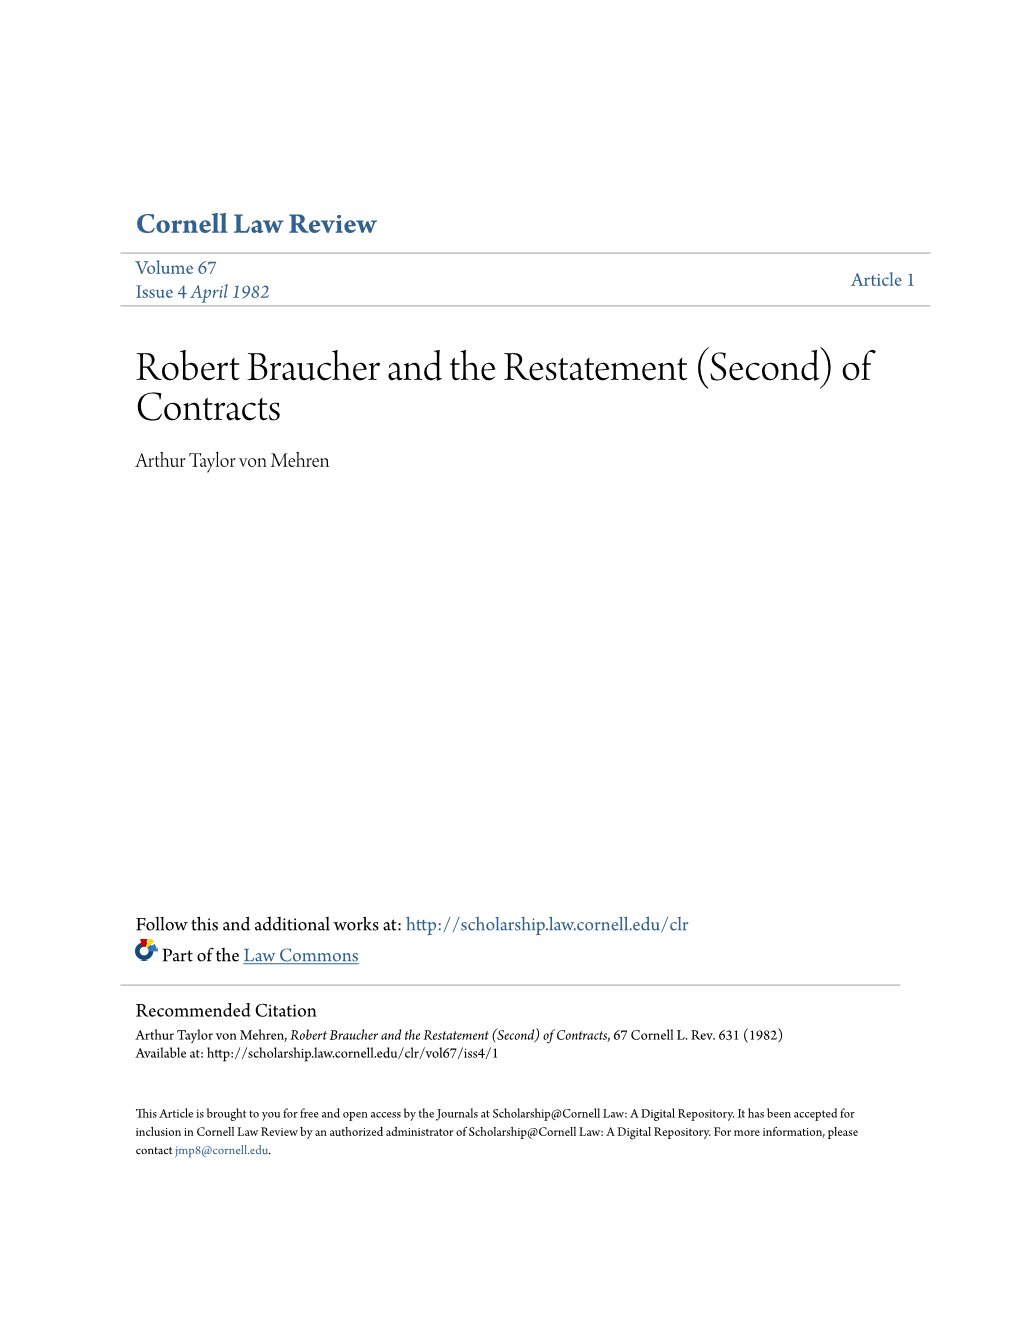 Robert Braucher and the Restatement (Second) of Contracts Arthur Taylor Von Mehren